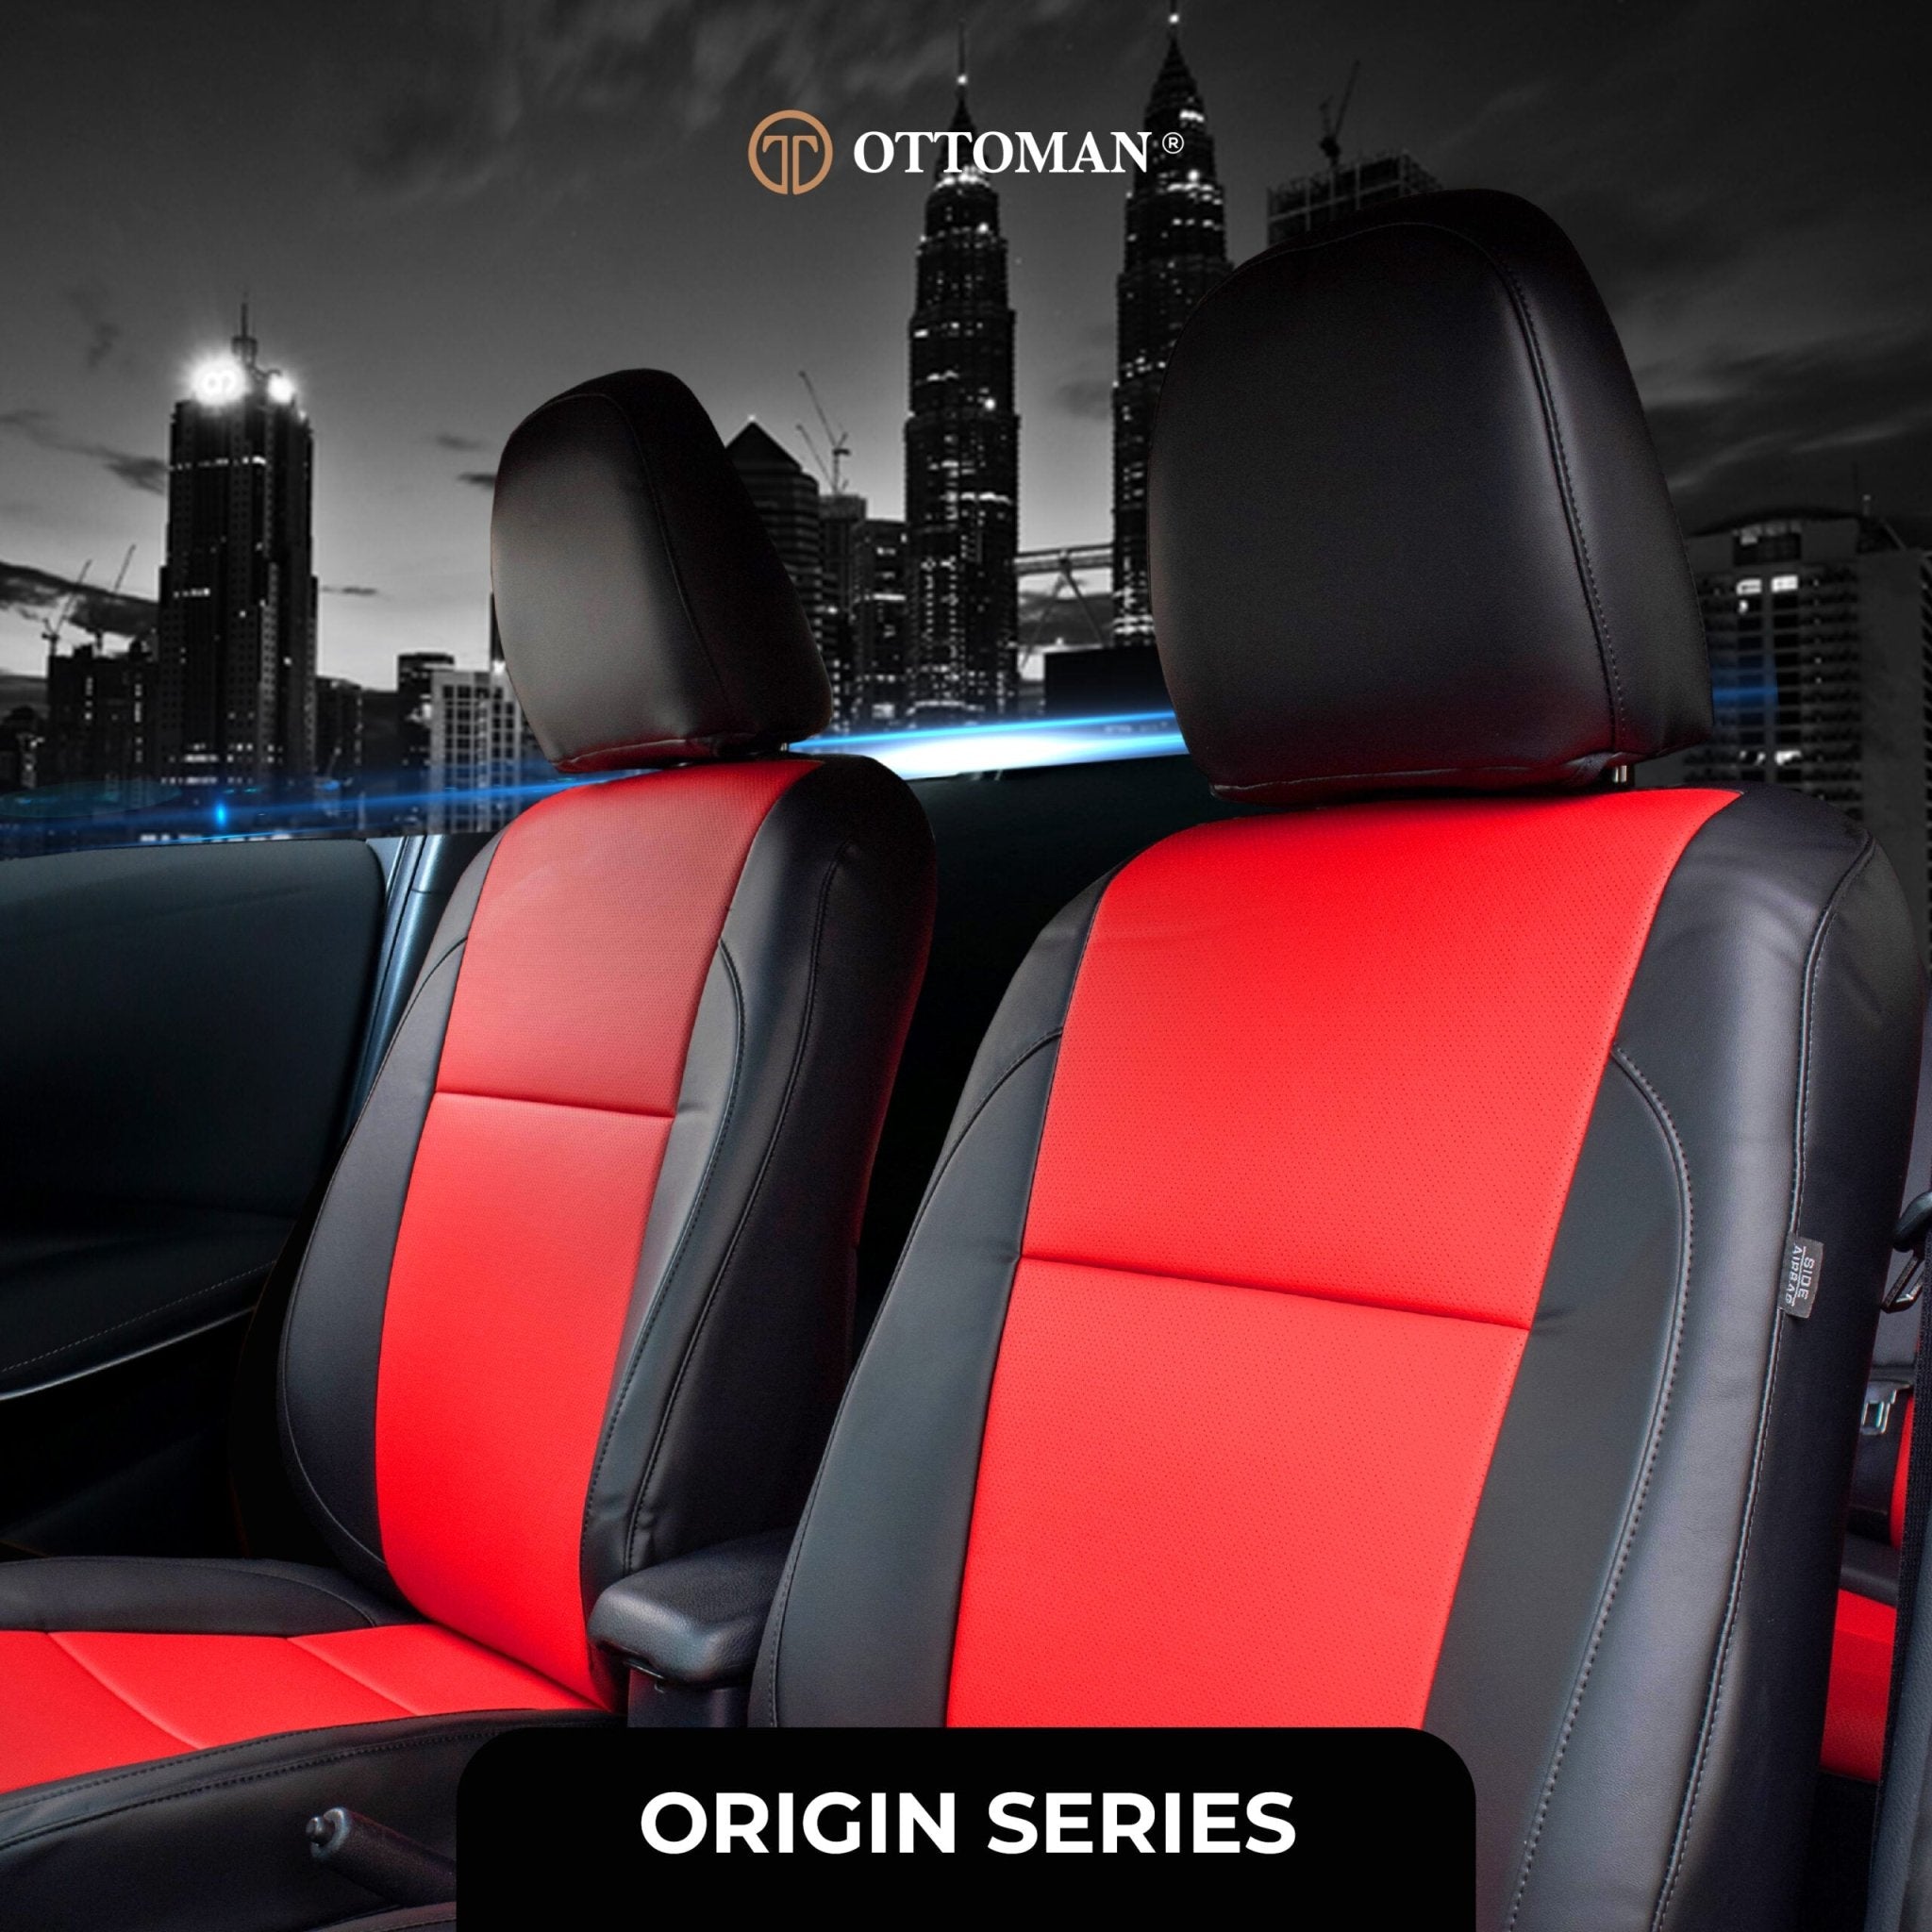 Proton Ertiga (2016-2019) Ottoman Seat Cover Seat Cover in Klang Selangor, Penang, Johor Bahru - Ottoman Car Mats